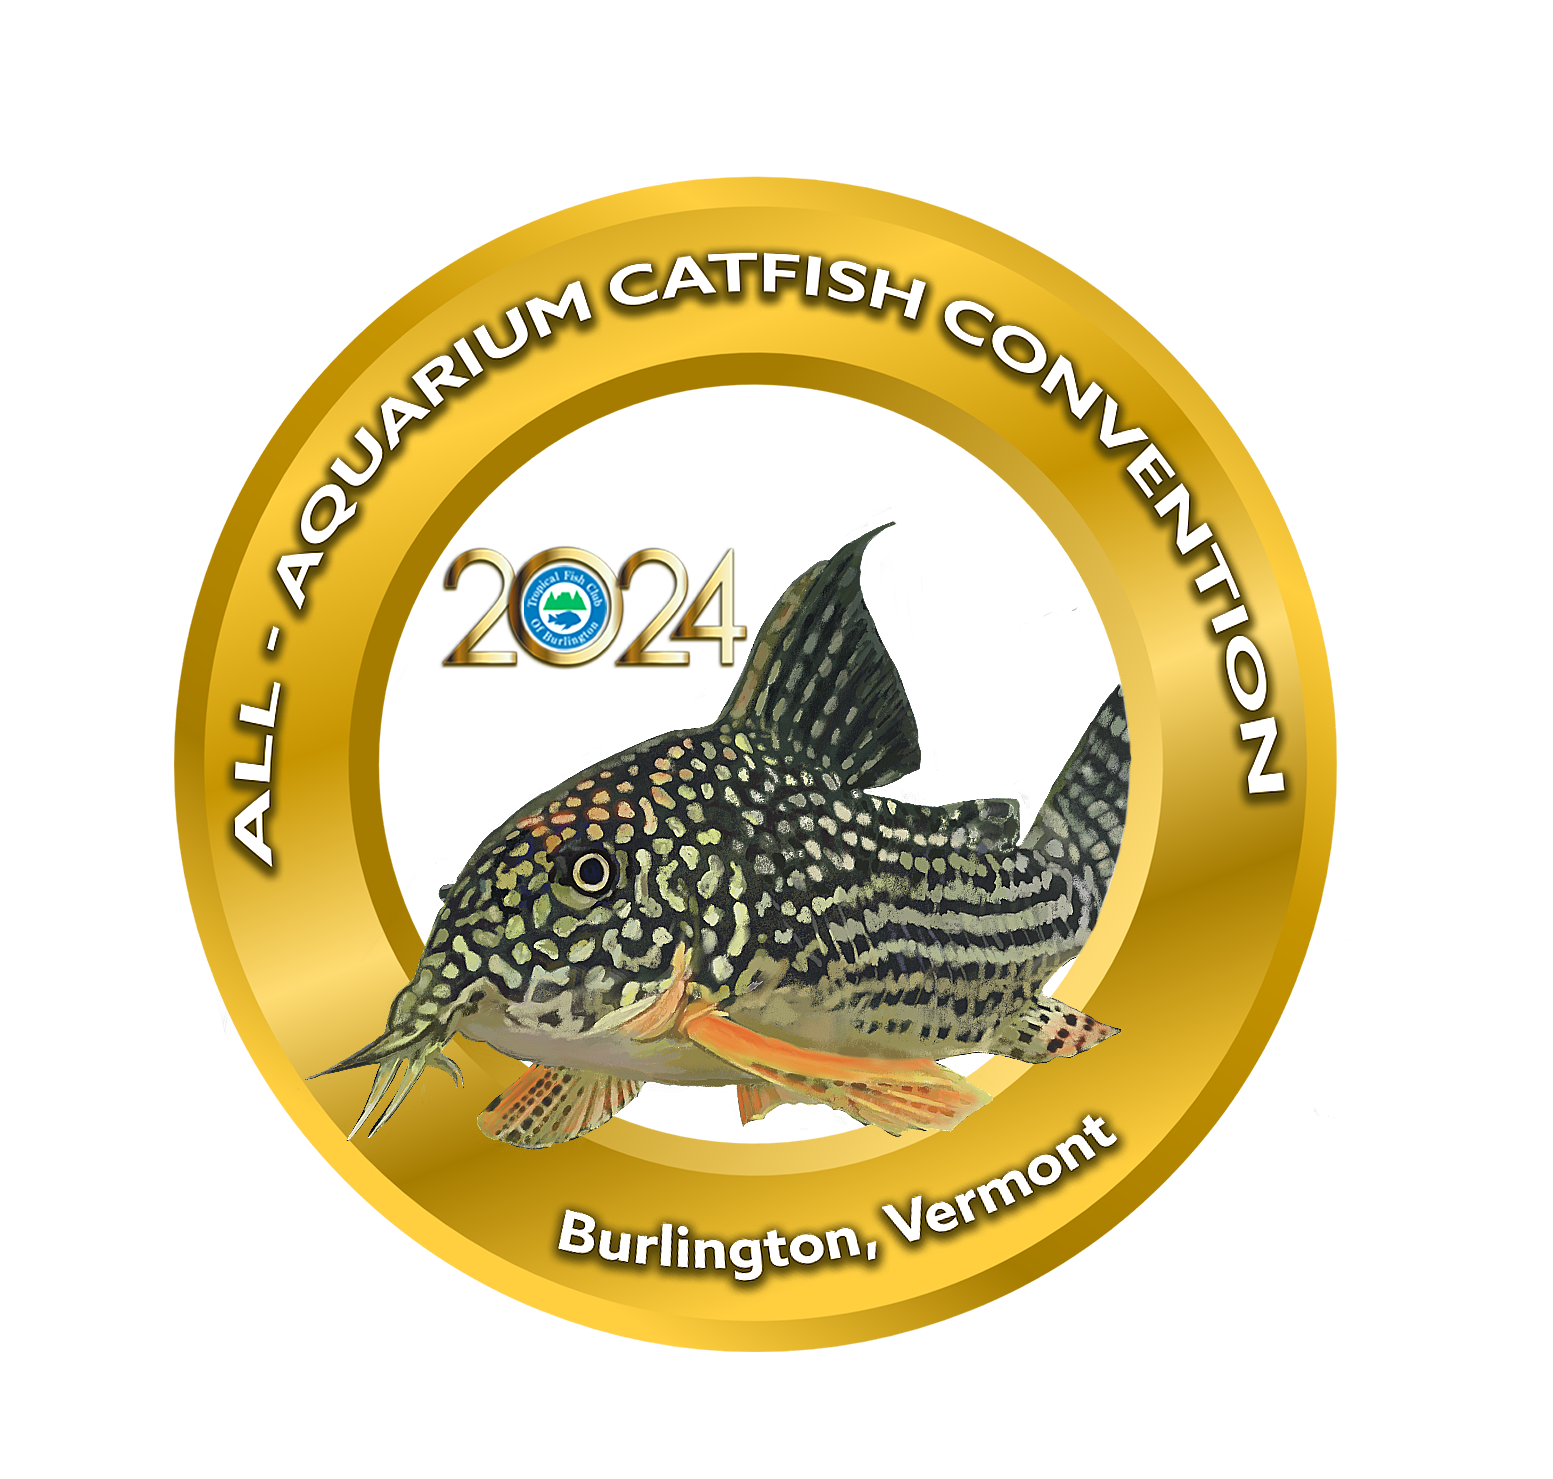 AllAquarium Catfish Convention 2024 Tropical Fish Club of Burlington